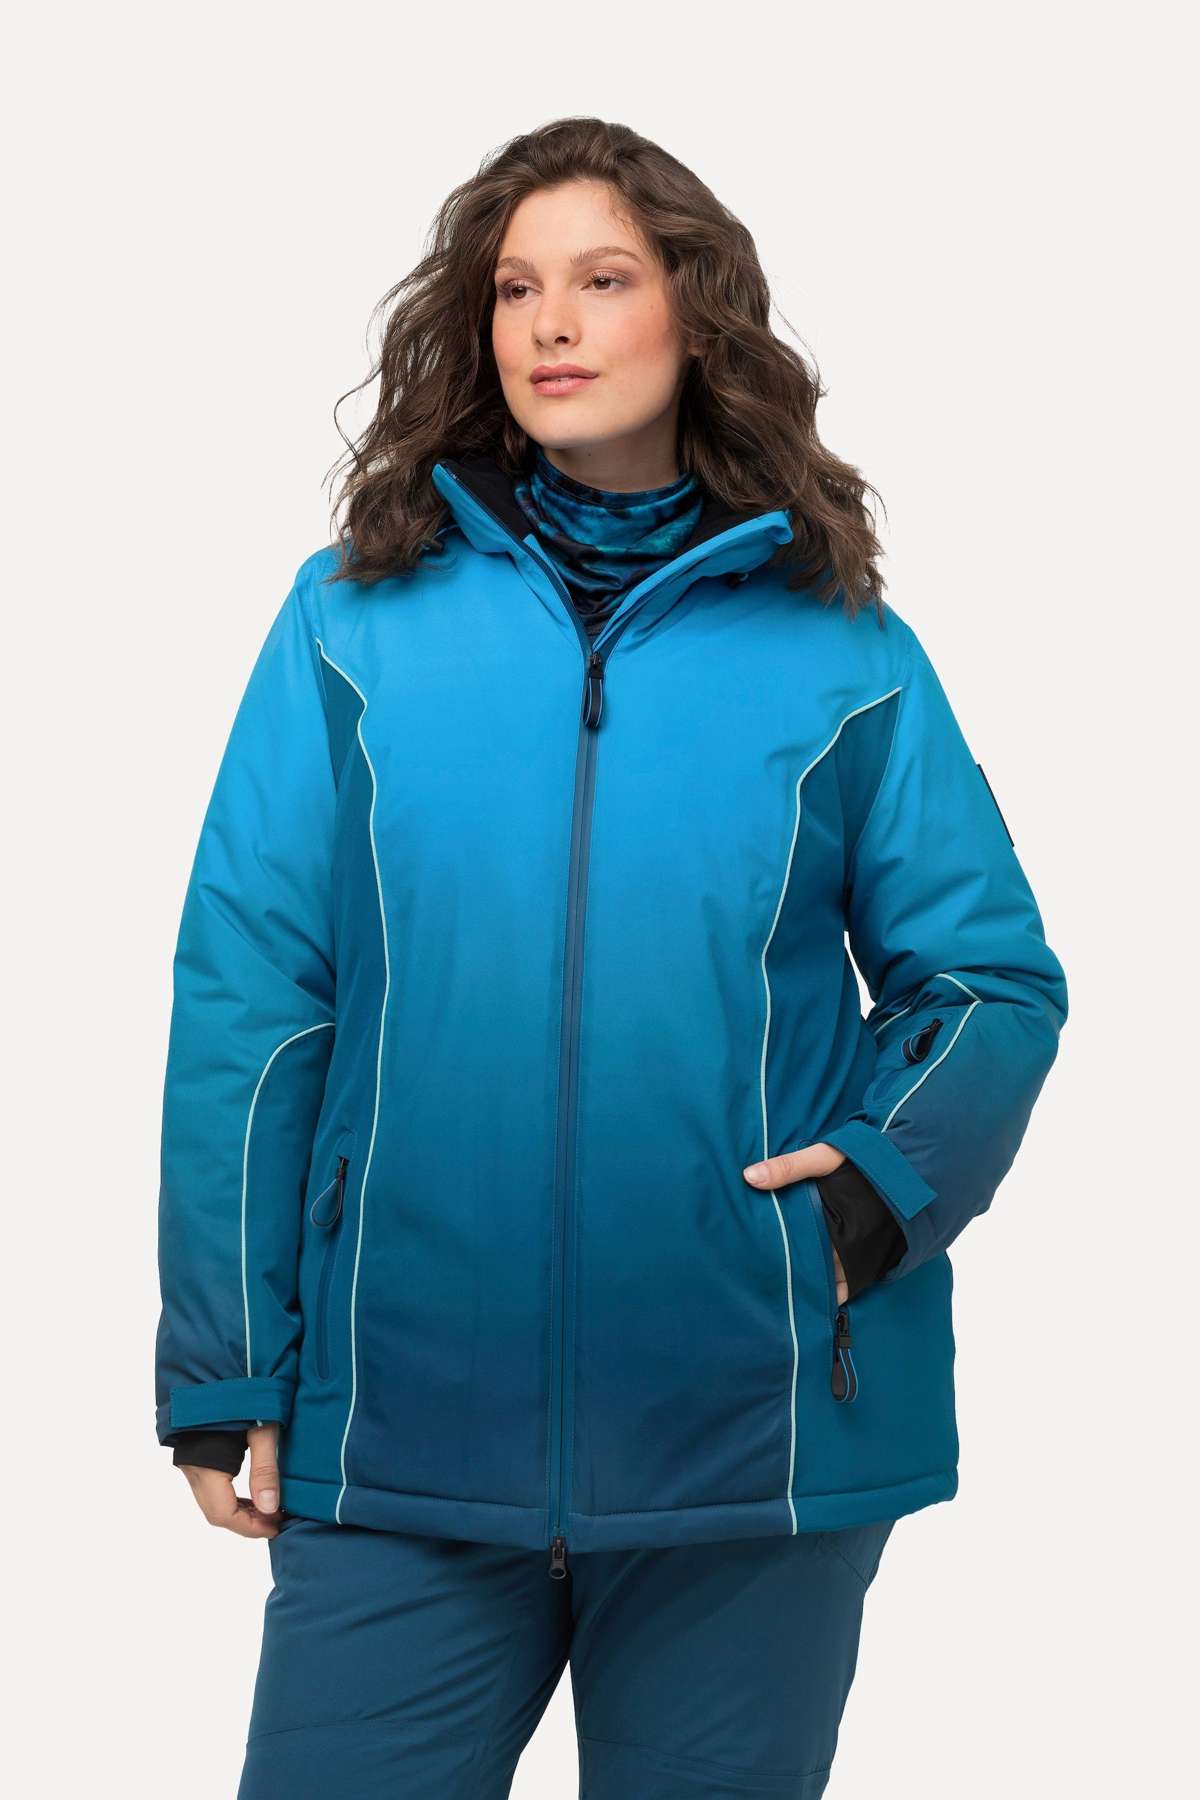 Функциональная куртка, куртка с градиентом цвета, водонепроницаемая